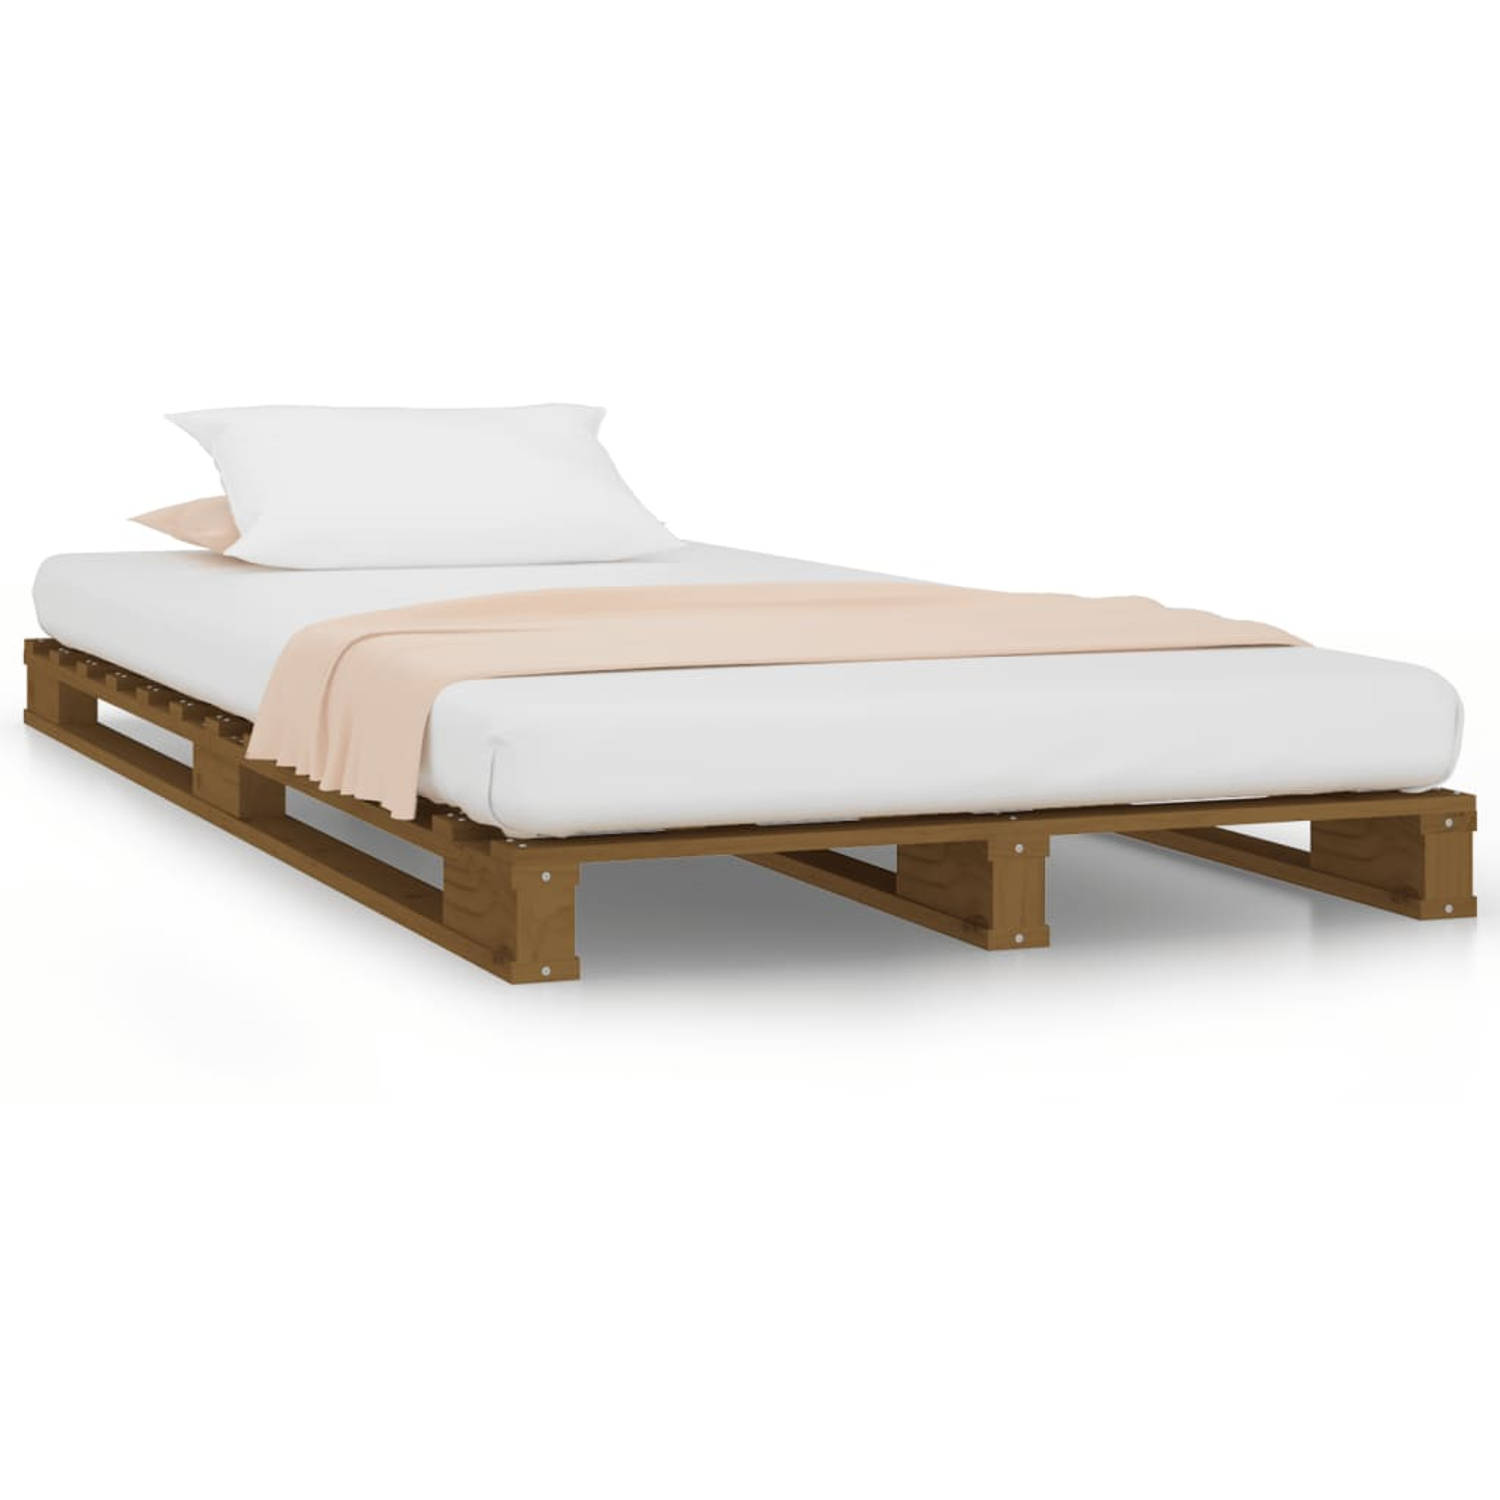 The Living Store Palletbed massief grenenhout honingbruin 100x200 cm - Palletbed - Palletbedden - Bed - Slaapkamermeubel - Bedframe - Eenpersoonsbed - Houten Bed - Bed Frame - Bedb